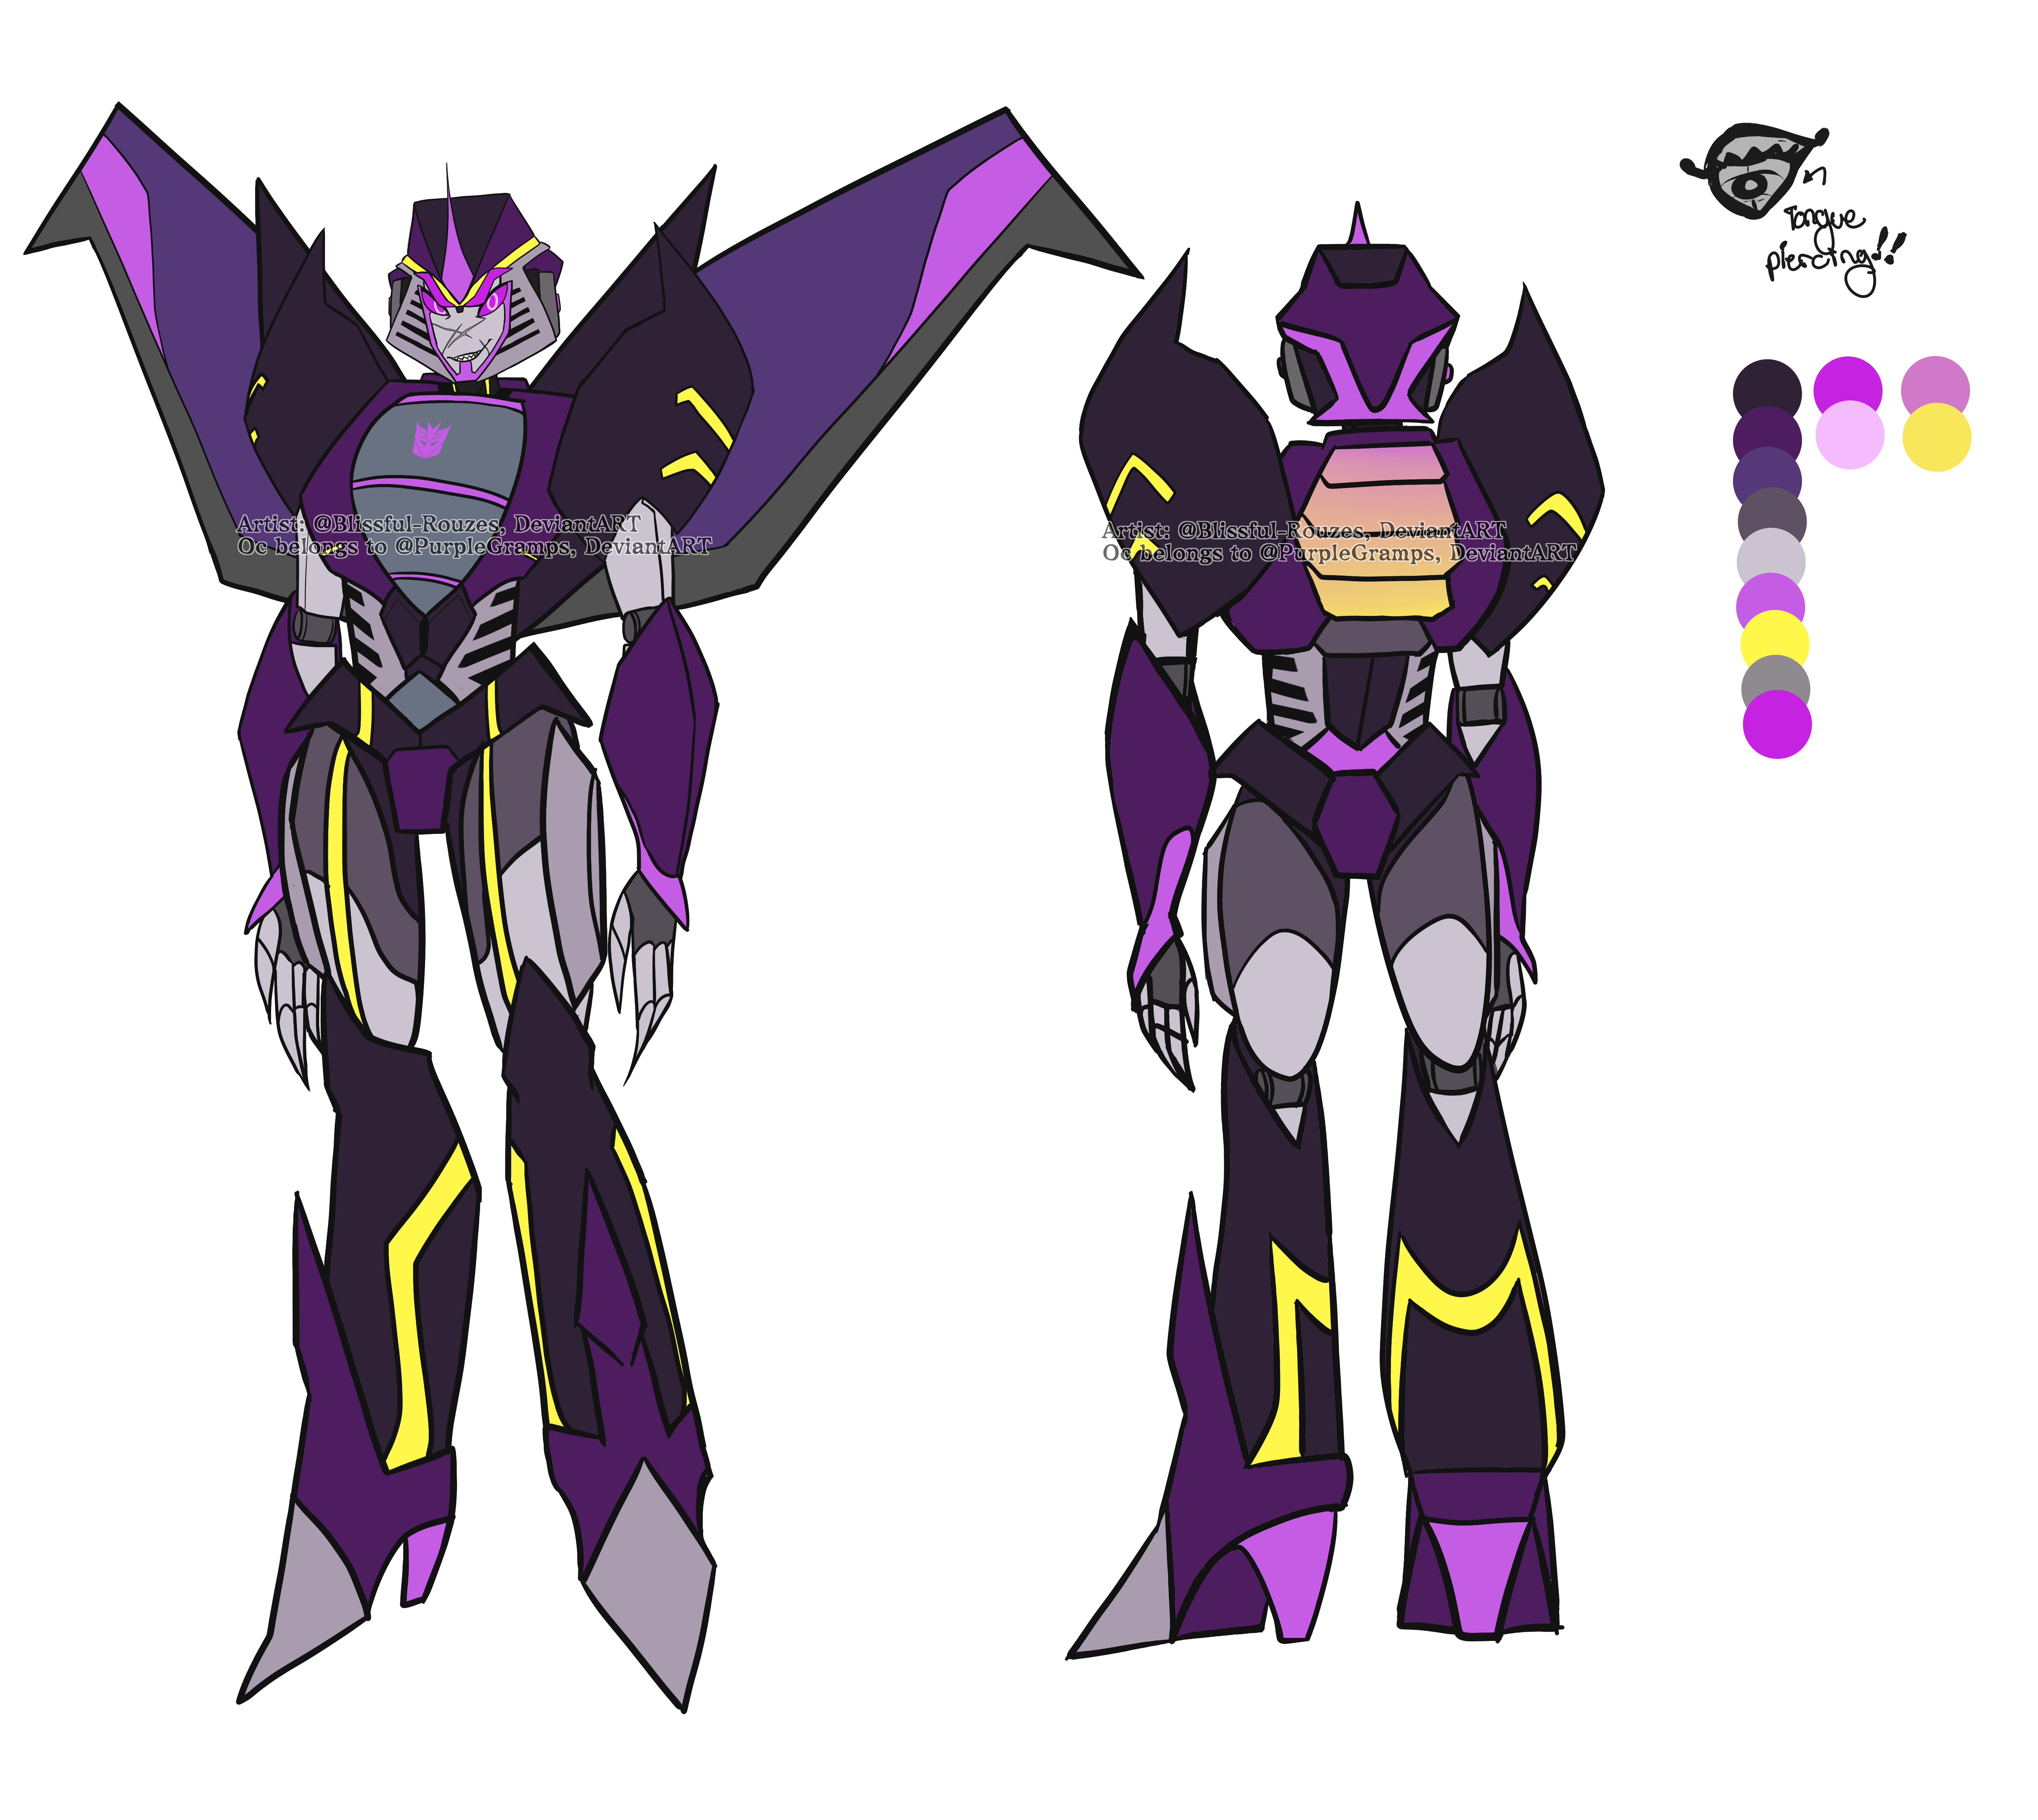 Transformers rid. Shadow Raker трансформер. Transformers OC. Transformers rid OC. Transformers Prime OC.